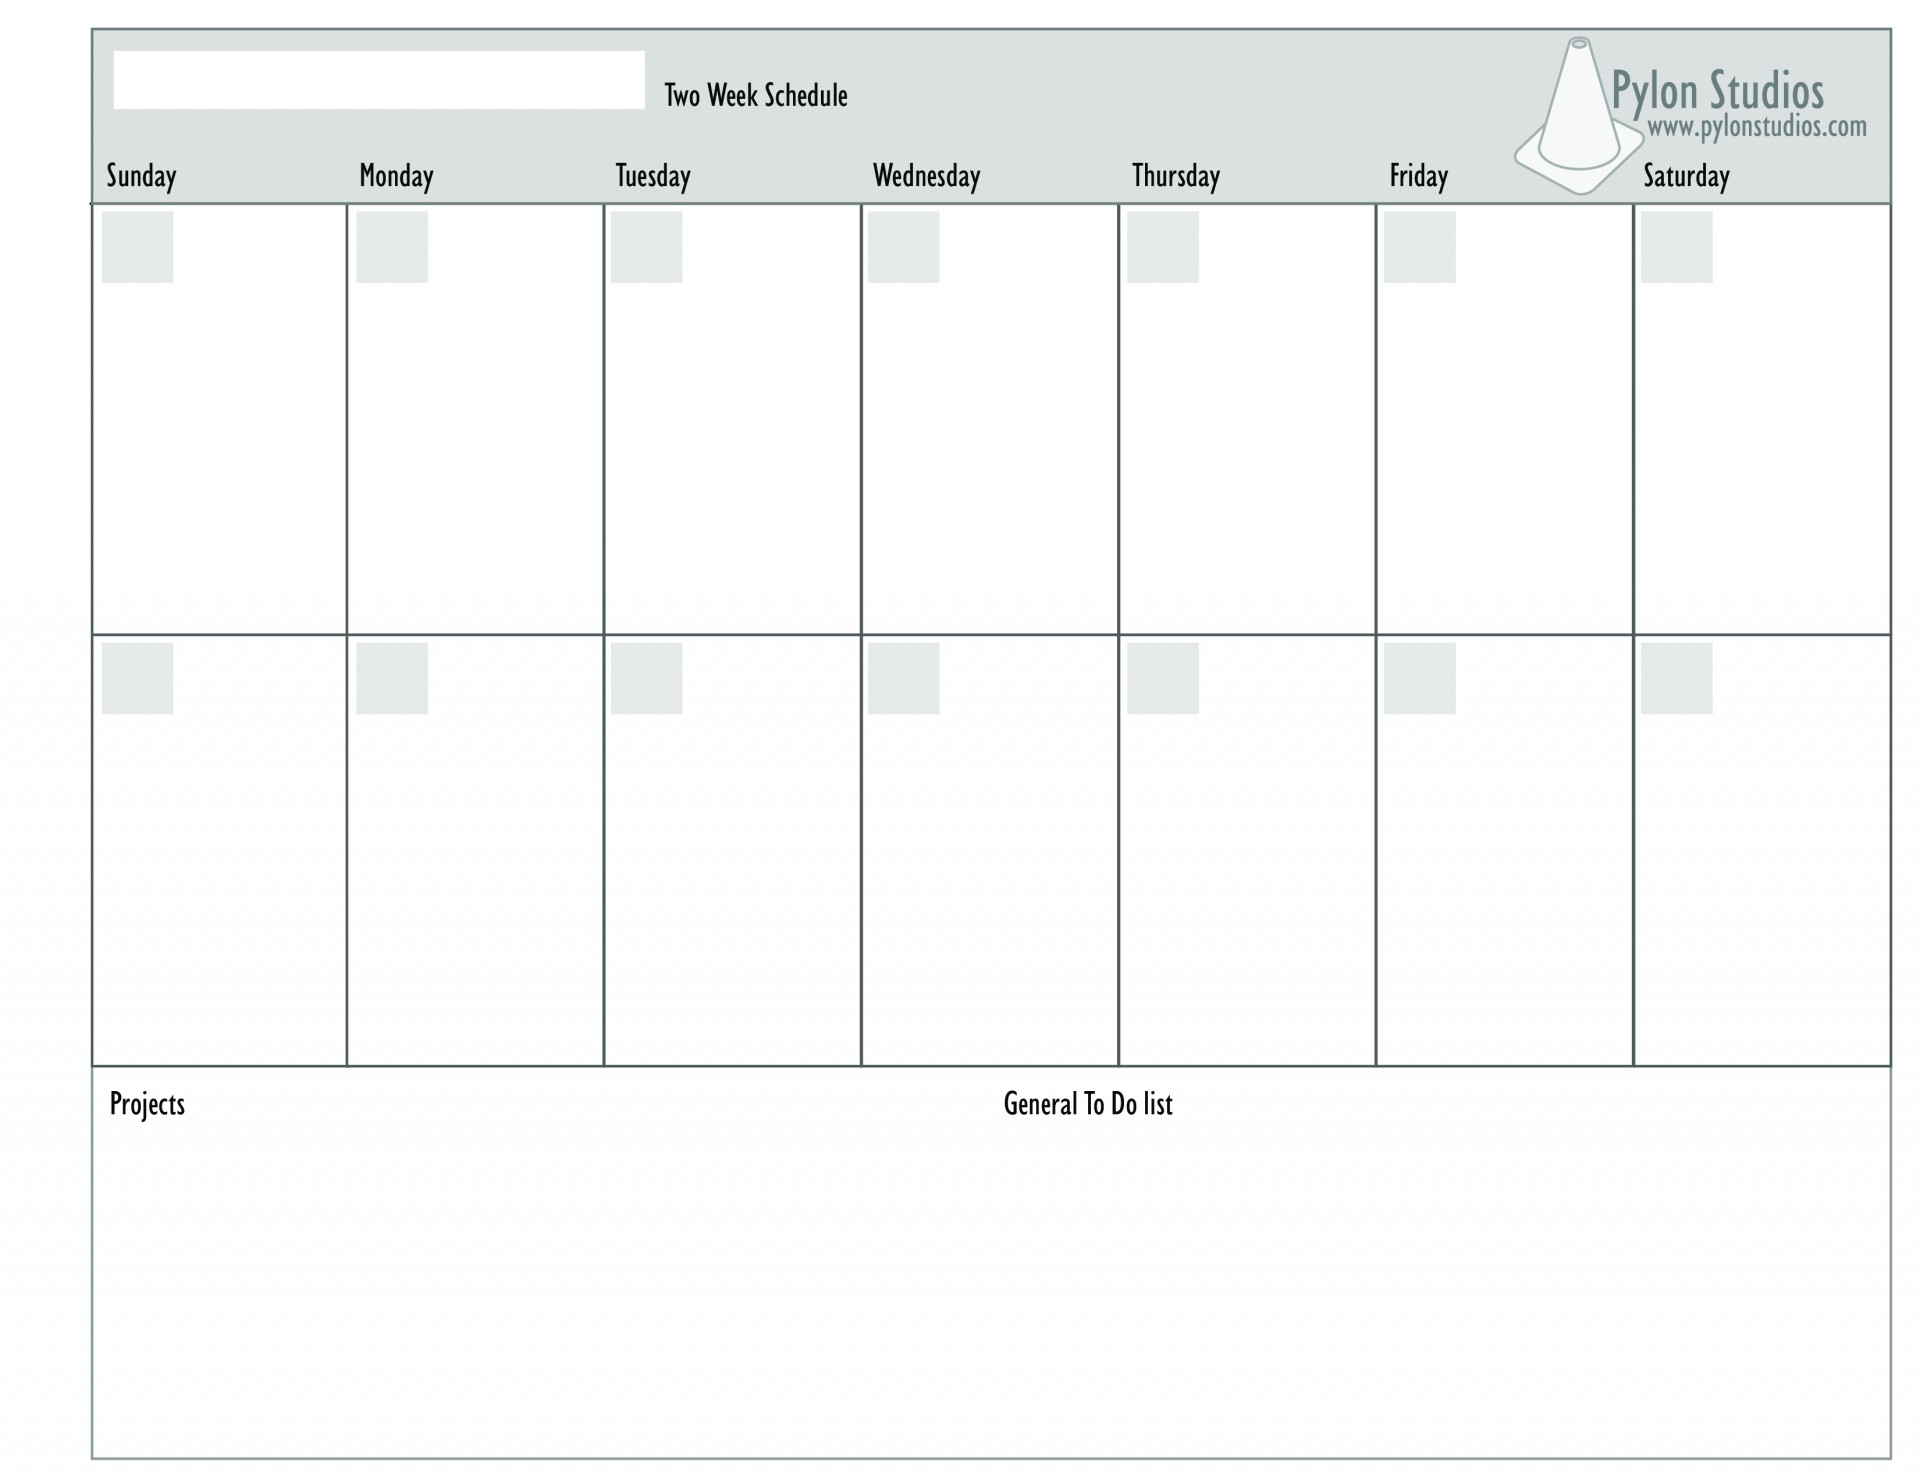 2 week schedule word template 48